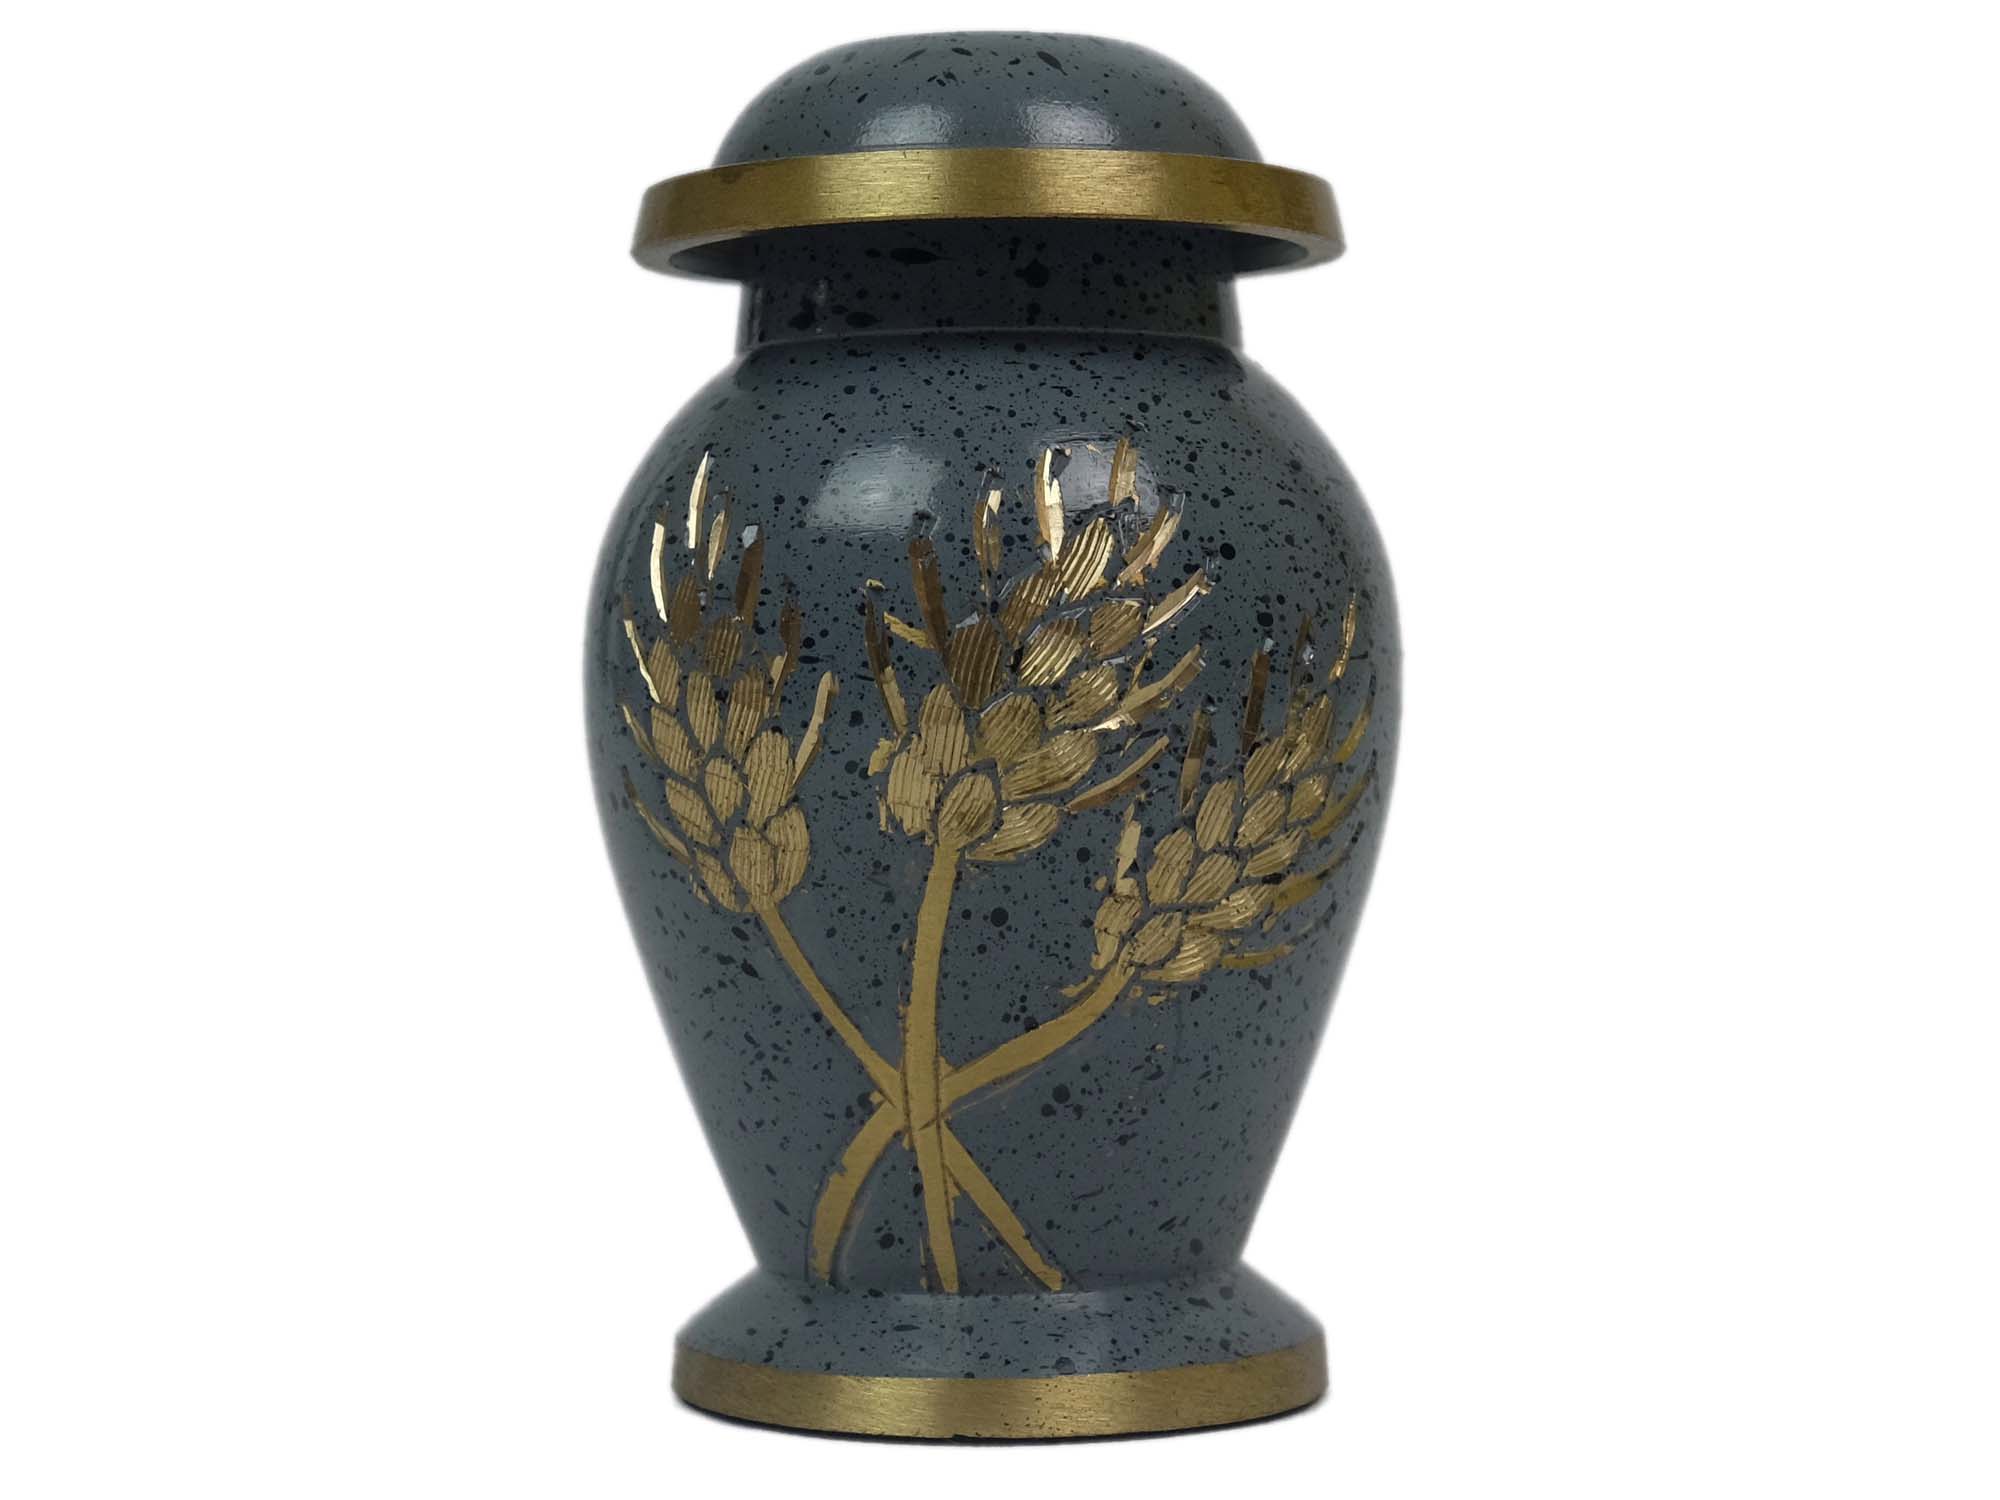 Cremation Keepsake Urn In Velvet Box: Gray Enameled, Gold Wheat Design - 1136-30-692 (8UW10)